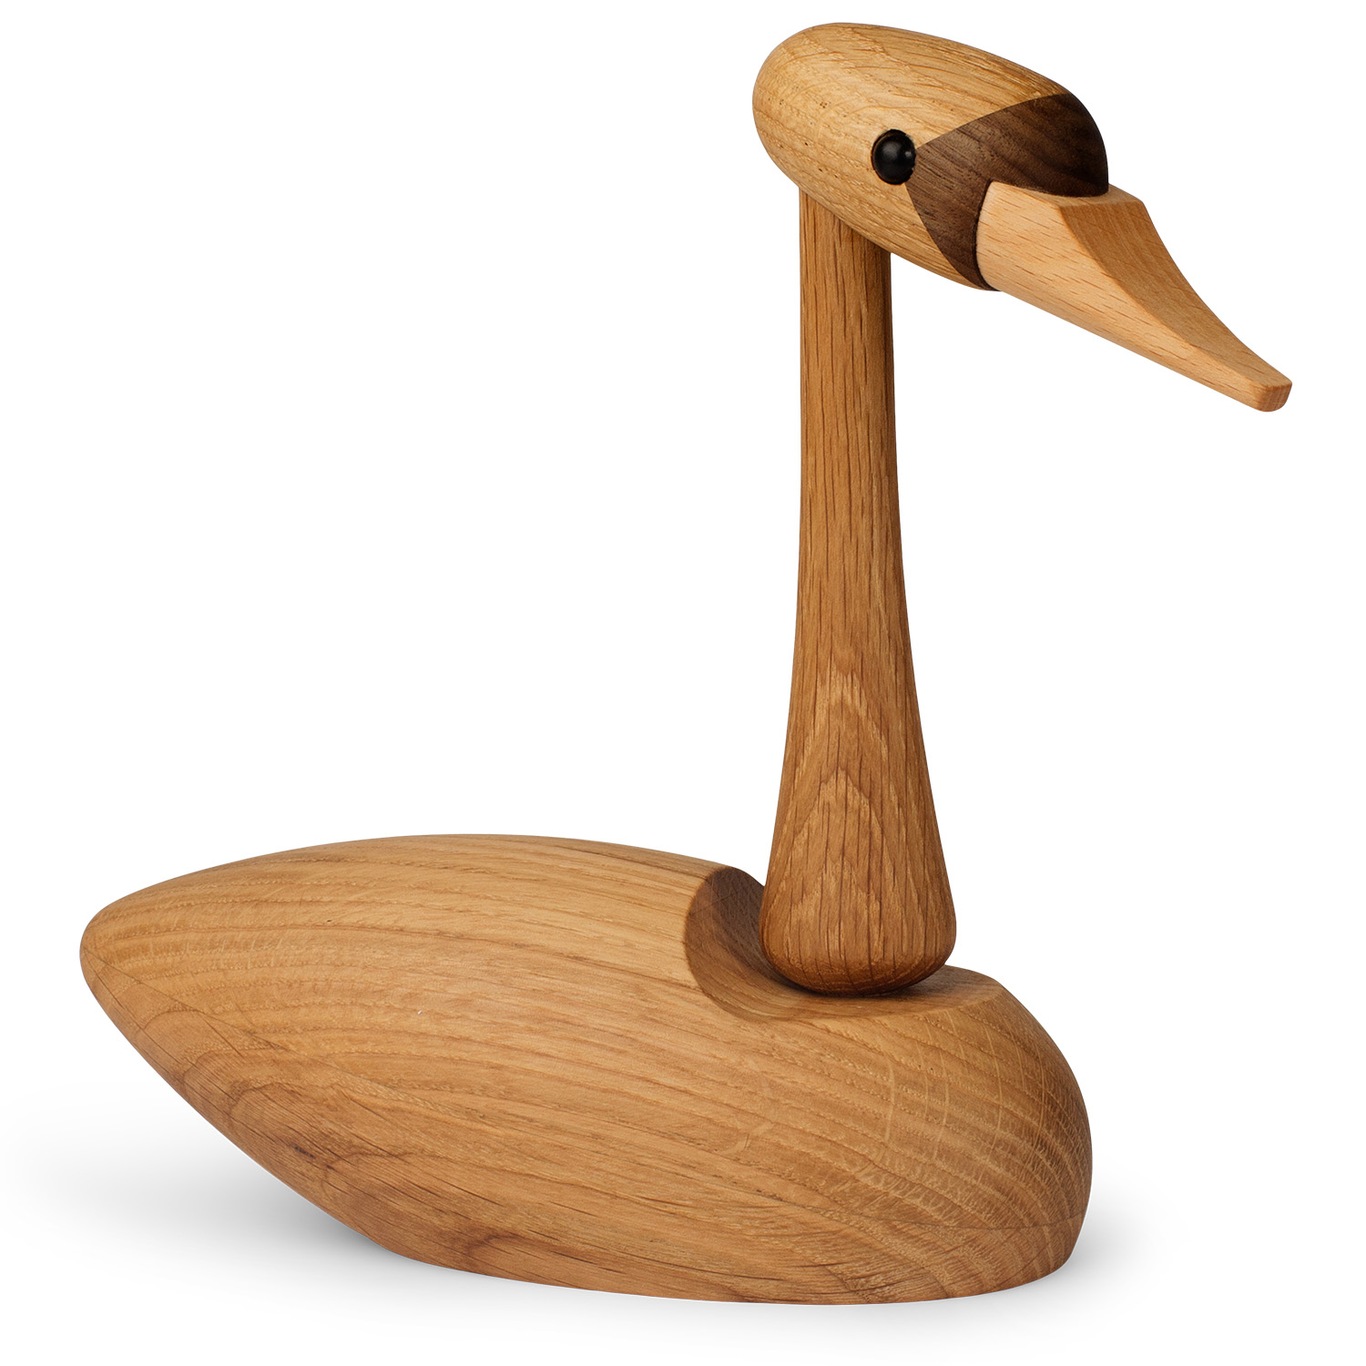 The Swan Wooden Figurine 19 cm, Oak